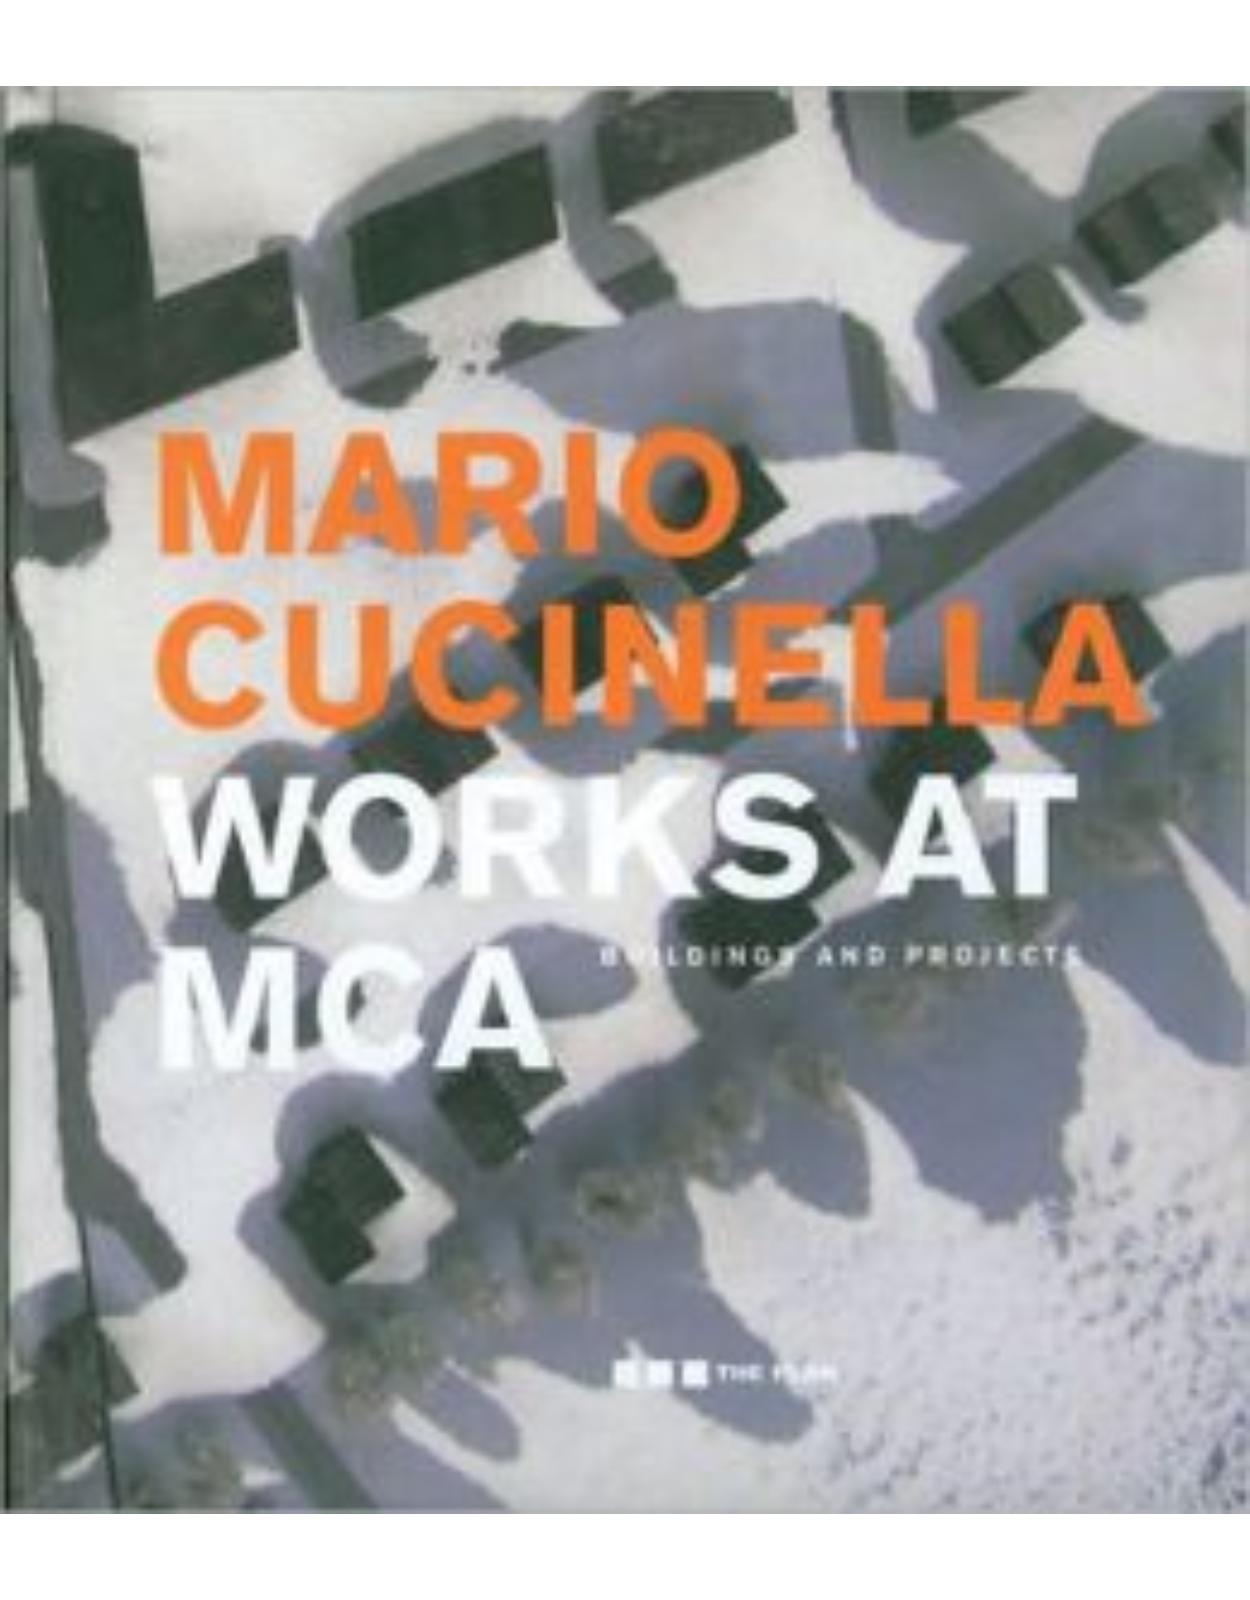 Cucinella Mario - Works at MCA